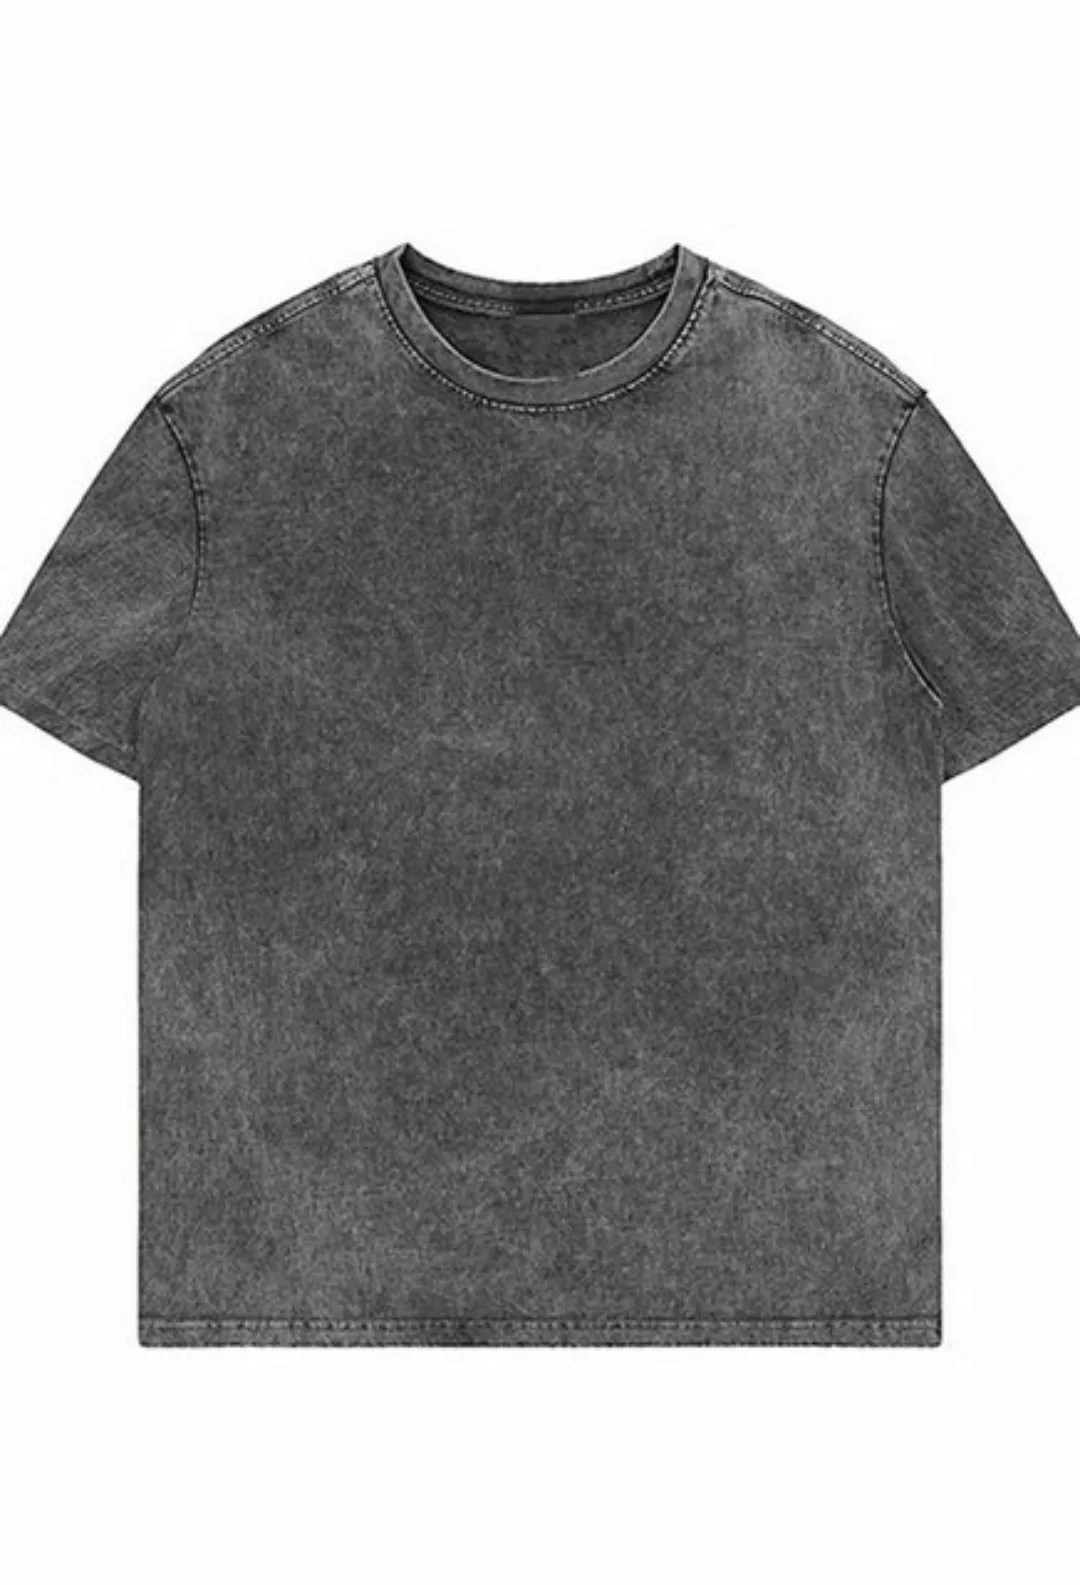 CHENIN T-Shirt T-Shirts for Herren Baumwolle Rundhals Kurzarm Shirt Vintage günstig online kaufen